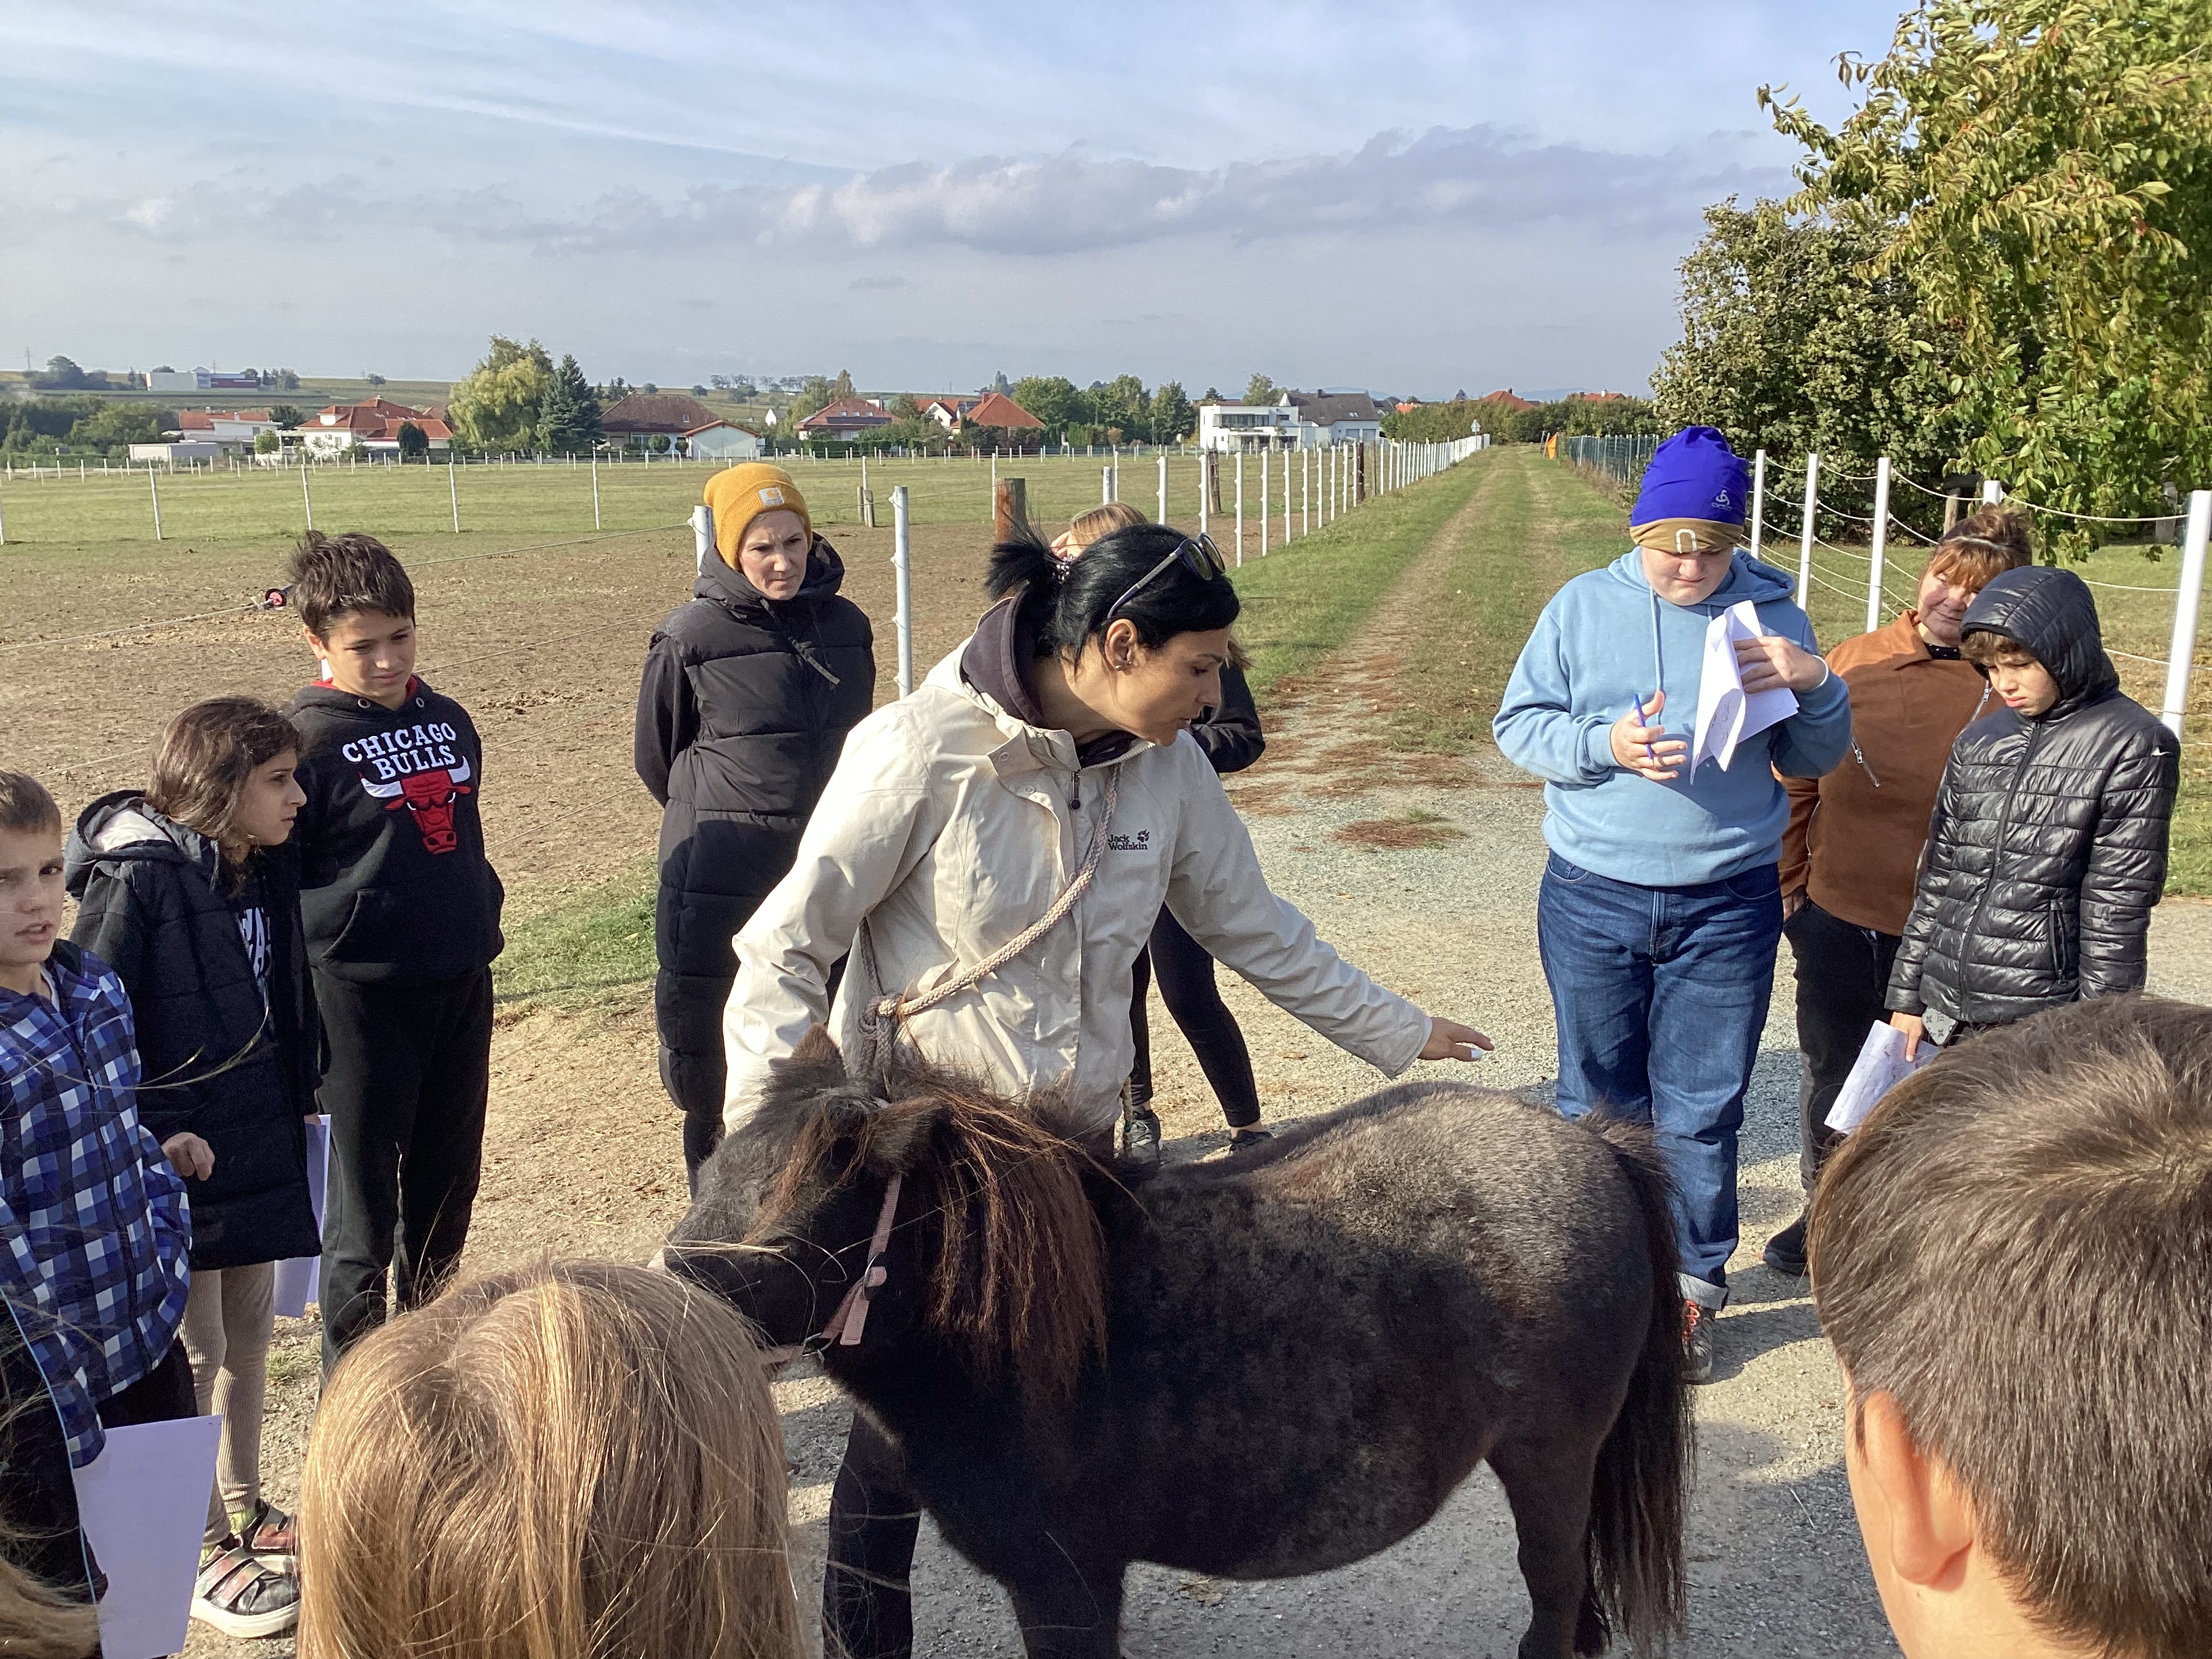 Biologieunterricht am Schlossgrundhof Deutschkreutz. Lehrkraft steht mit den Schülerinnen vor einem Pony und beschreibt die Körperteile.